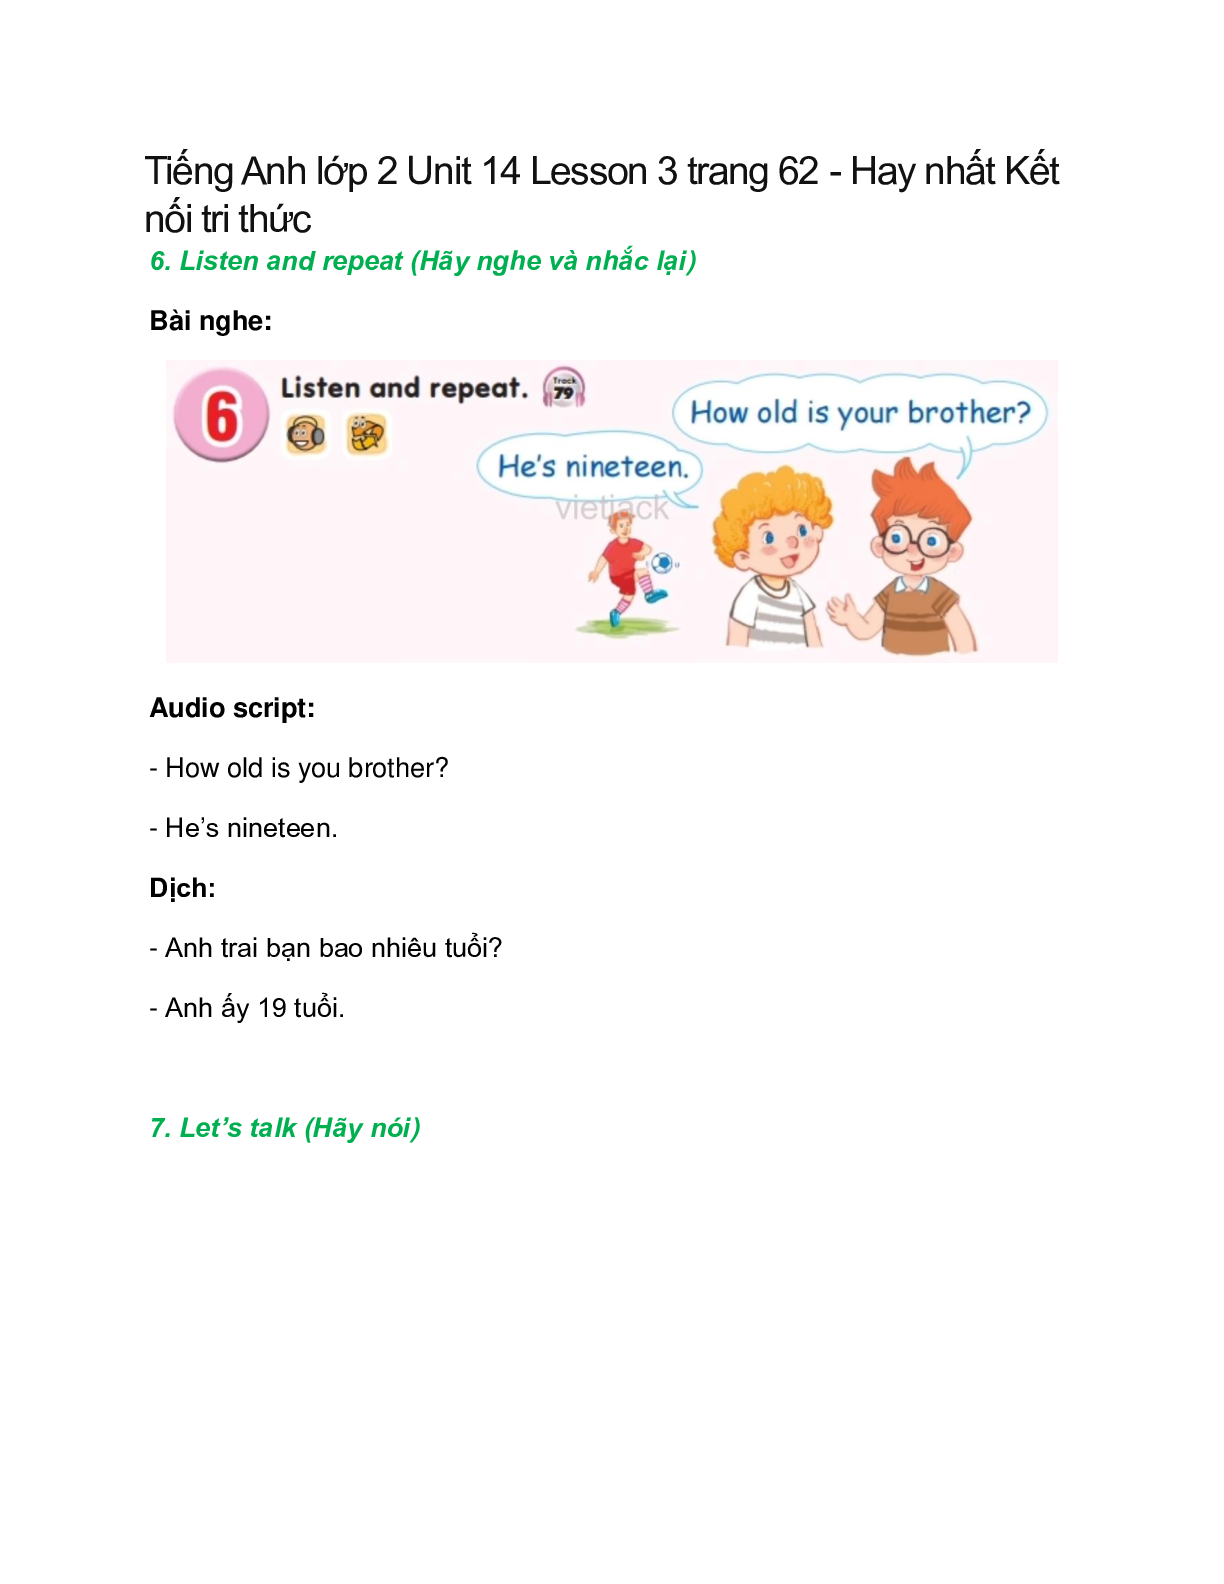 Tiếng Anh lớp 2 Unit 14 Lesson 3 trang 62 – Kết nối tri thức (trang 1)